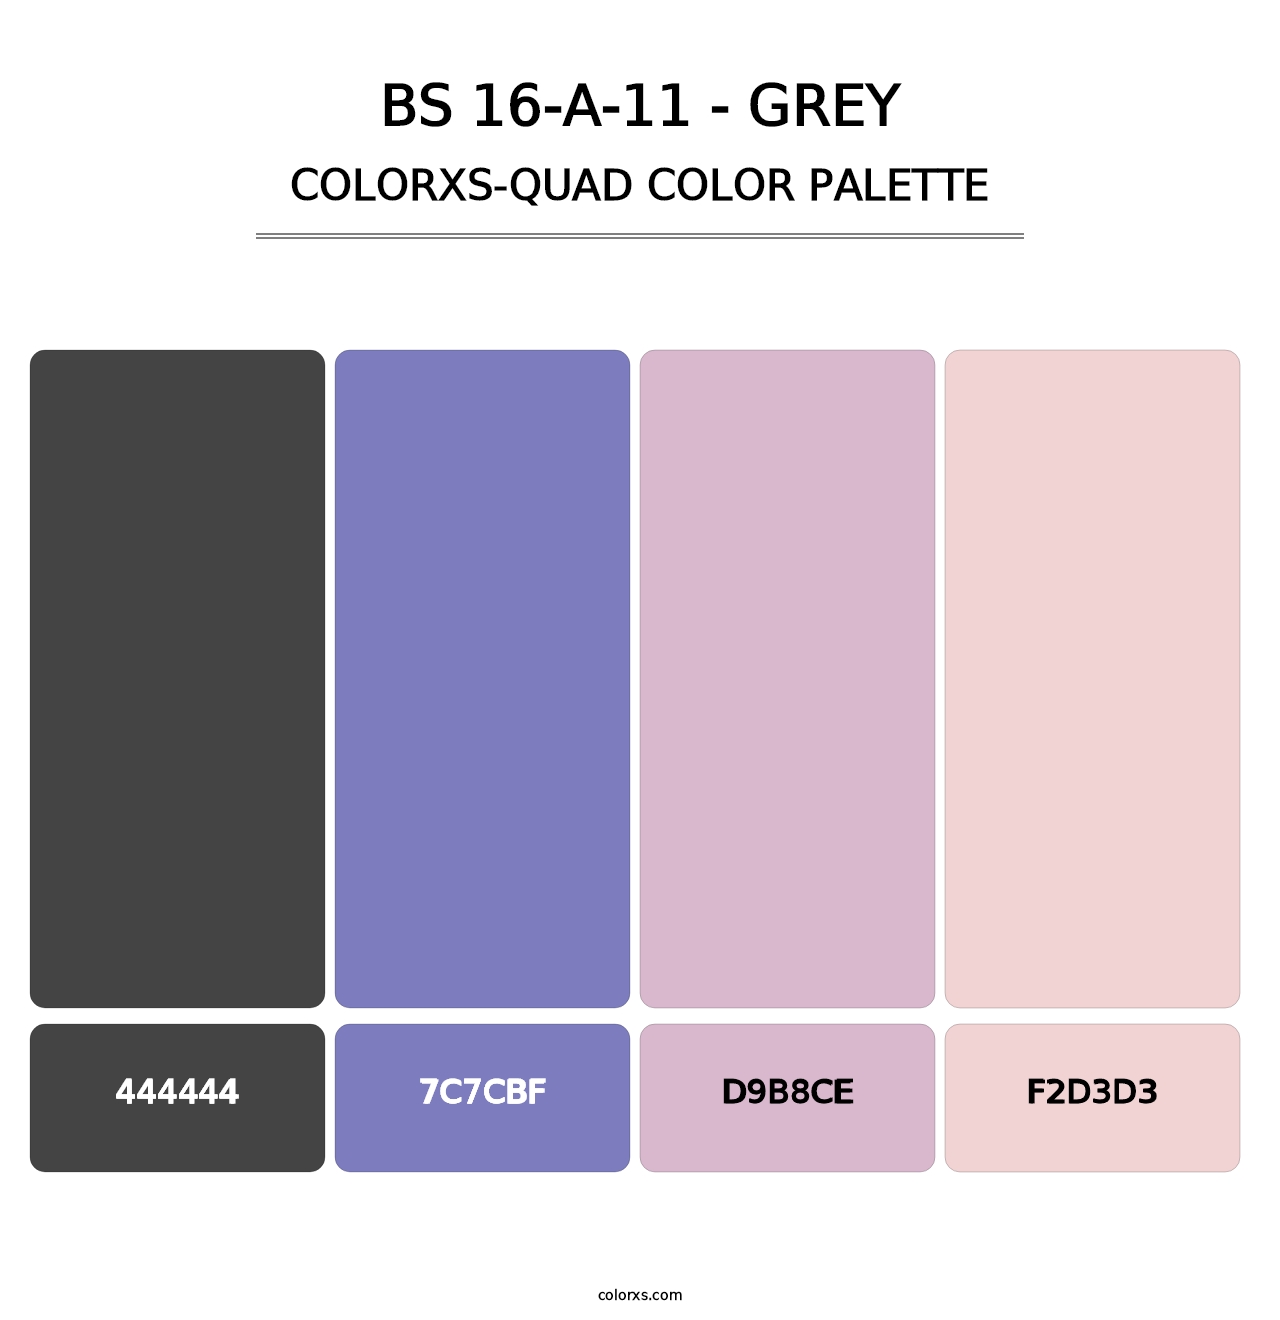 BS 16-A-11 - Grey - Colorxs Quad Palette